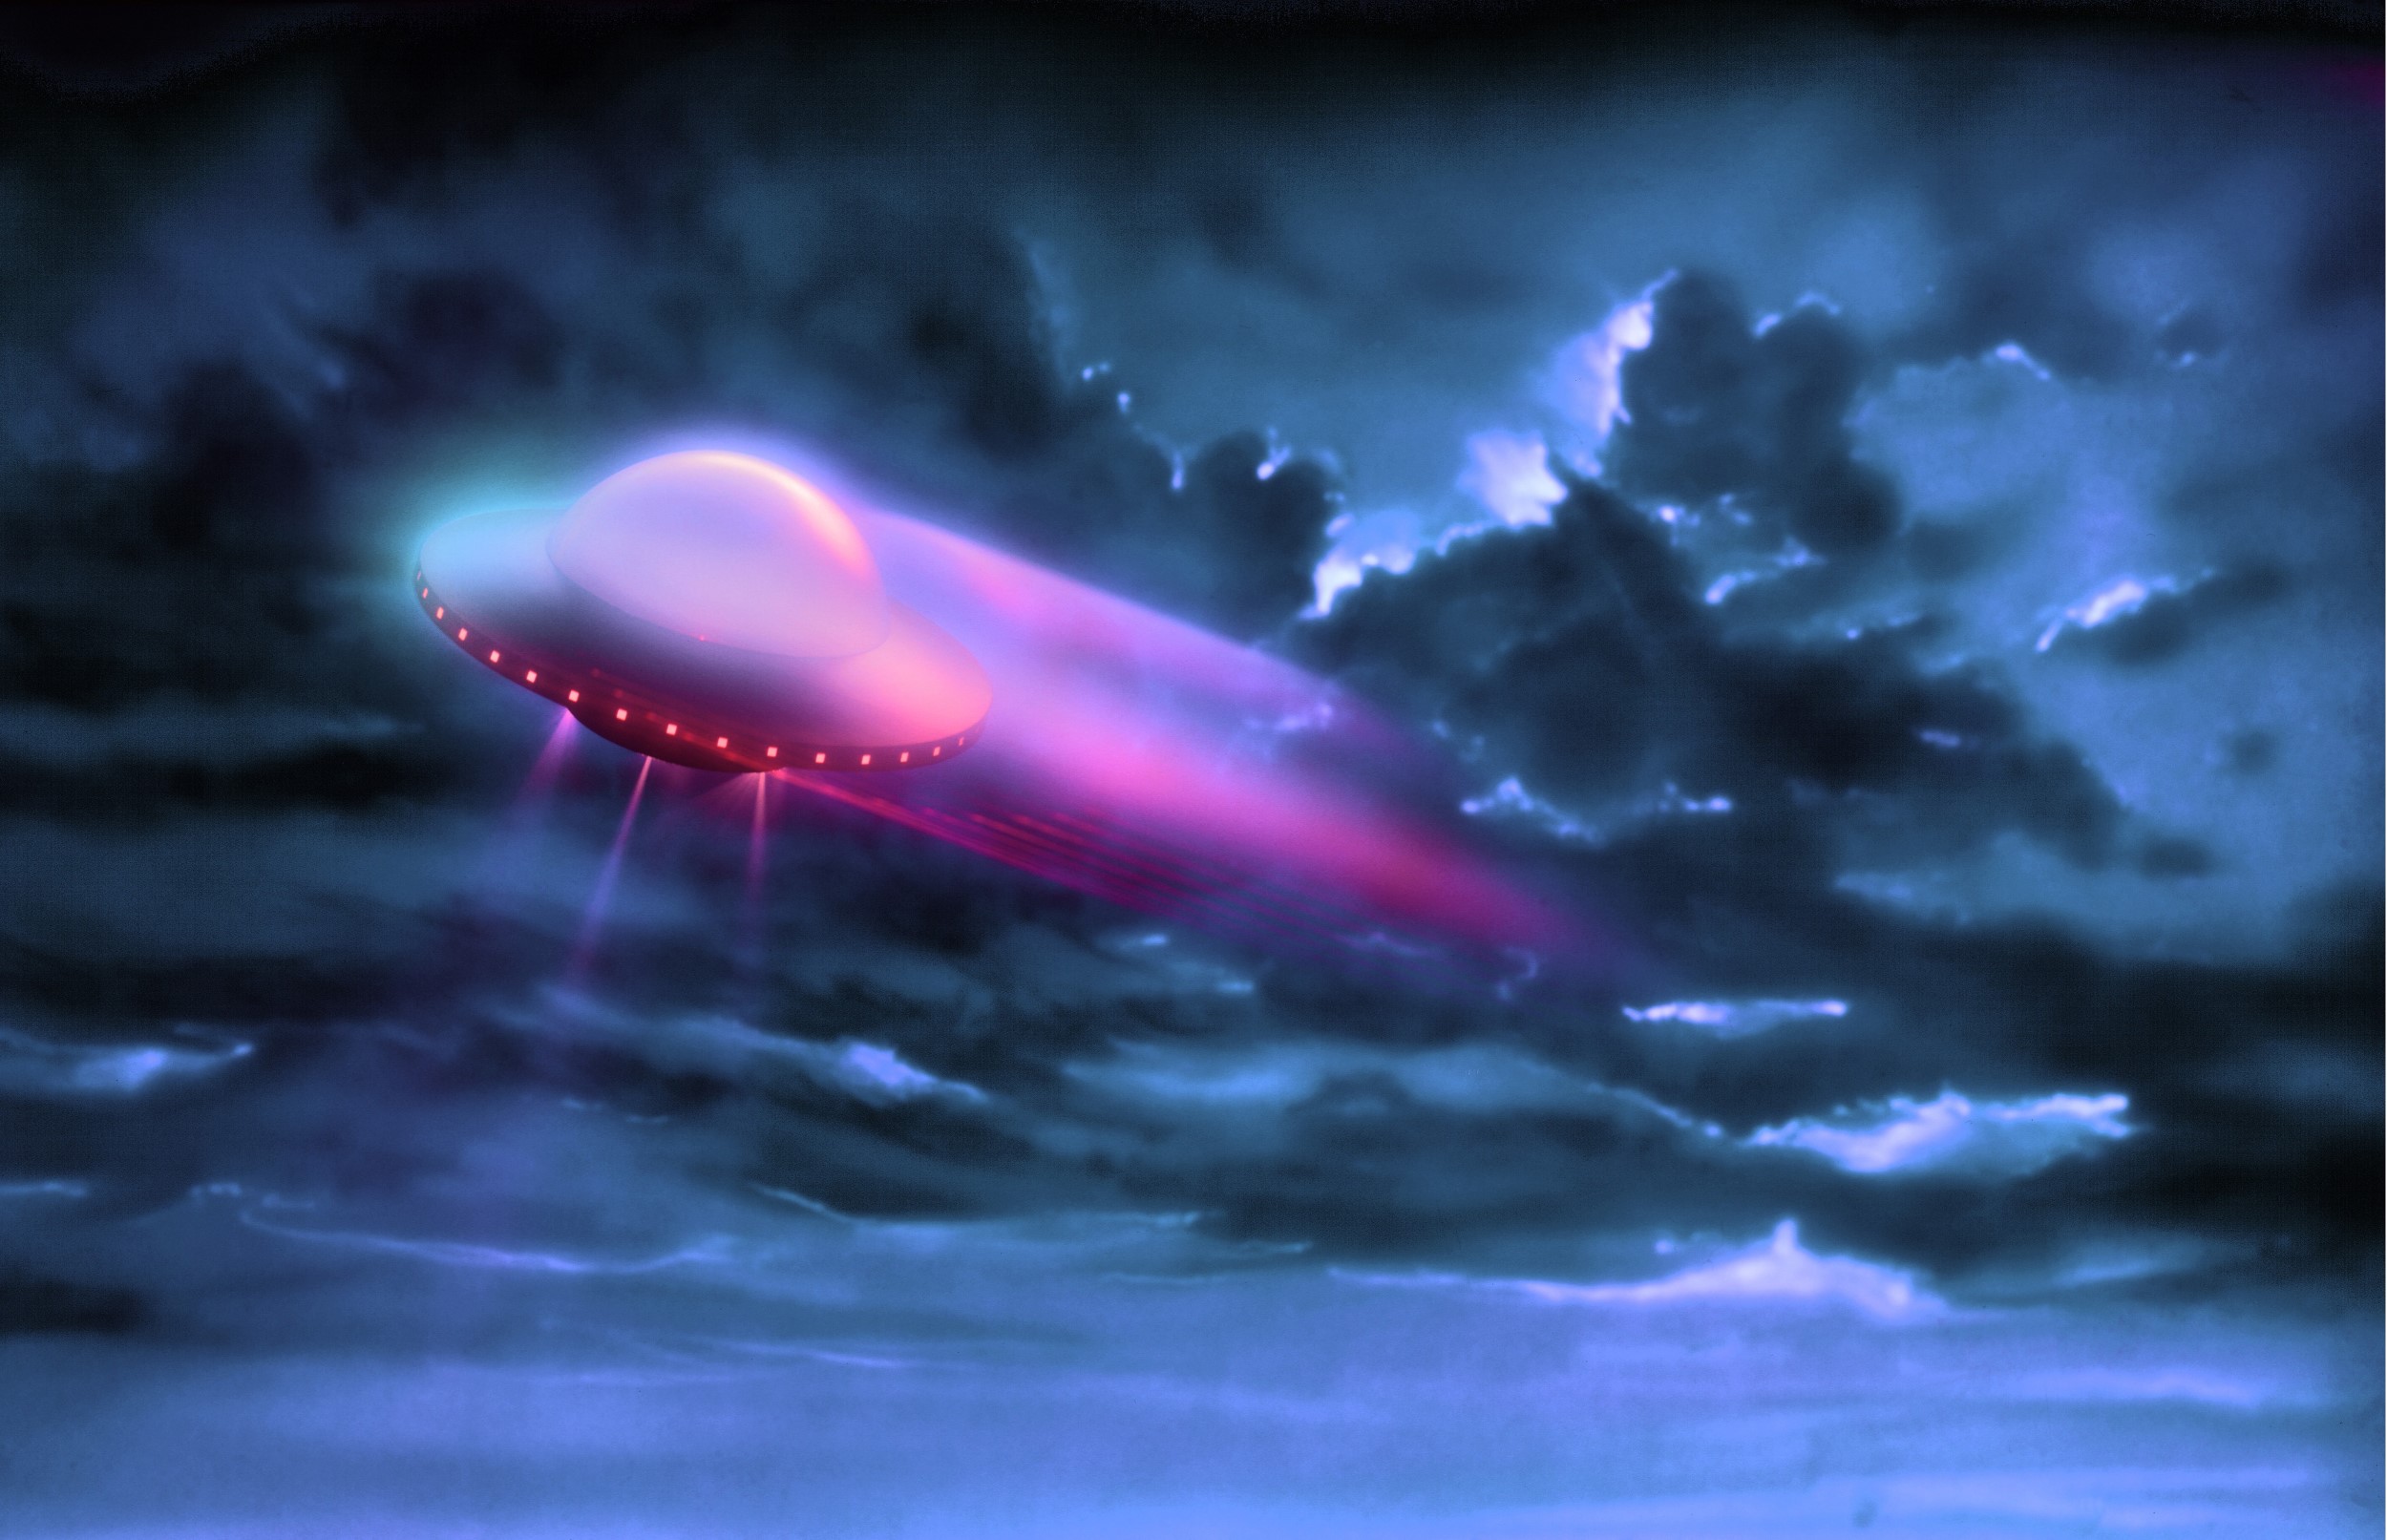 מודעת השקה של מותג הרכב הונדה מציתה את הדימיון חללית בשמיים משרד פרסום קשר בראל צילום סטודיו רייס צלמים